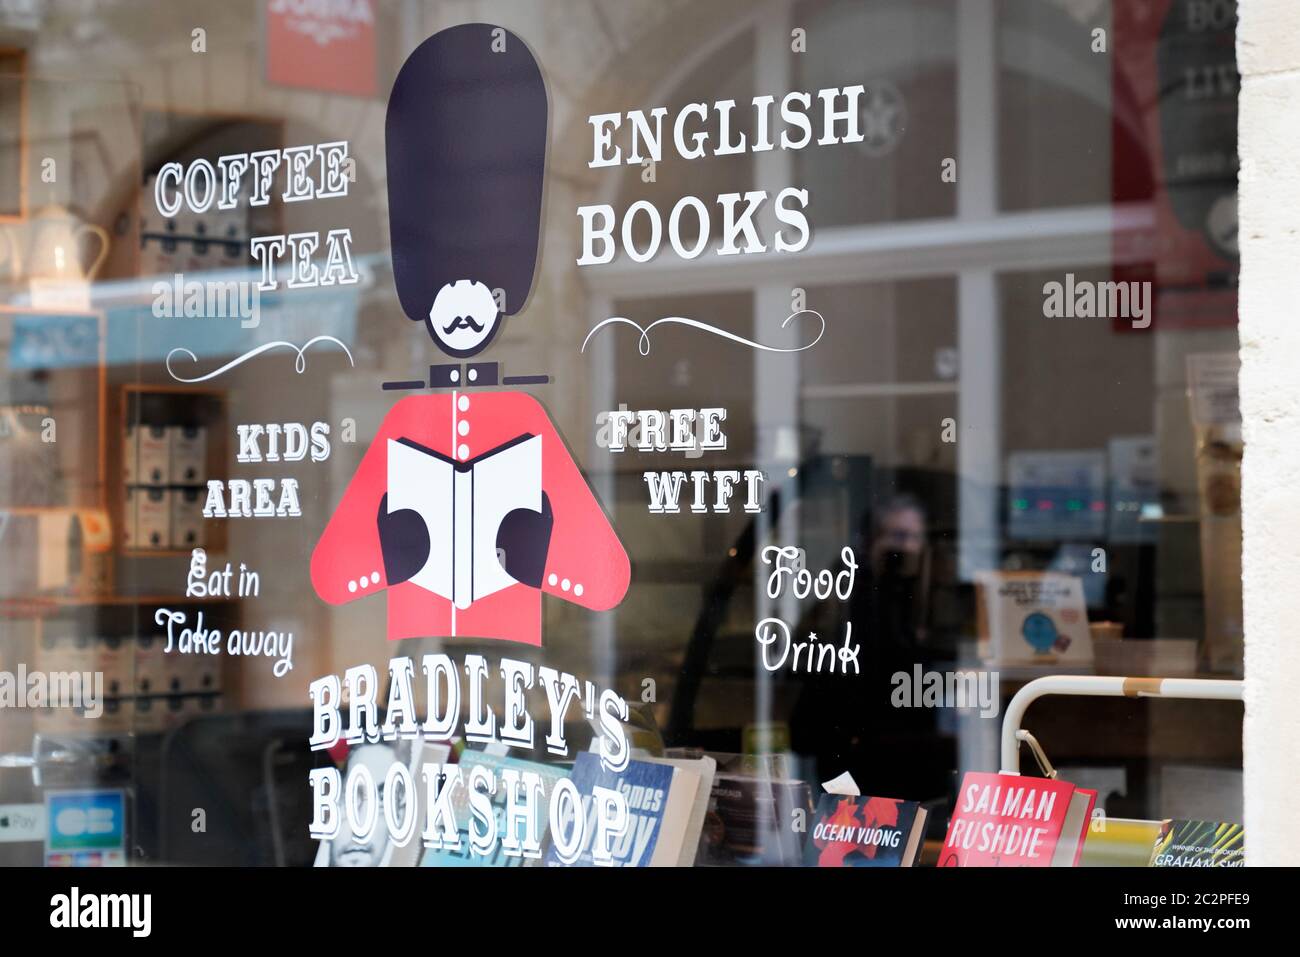 Bordeaux , Aquitaine / Francia - 06 14 2020 : Bradley's Bookshop logo negozio di libri inglesi segno negozio in strada Foto Stock